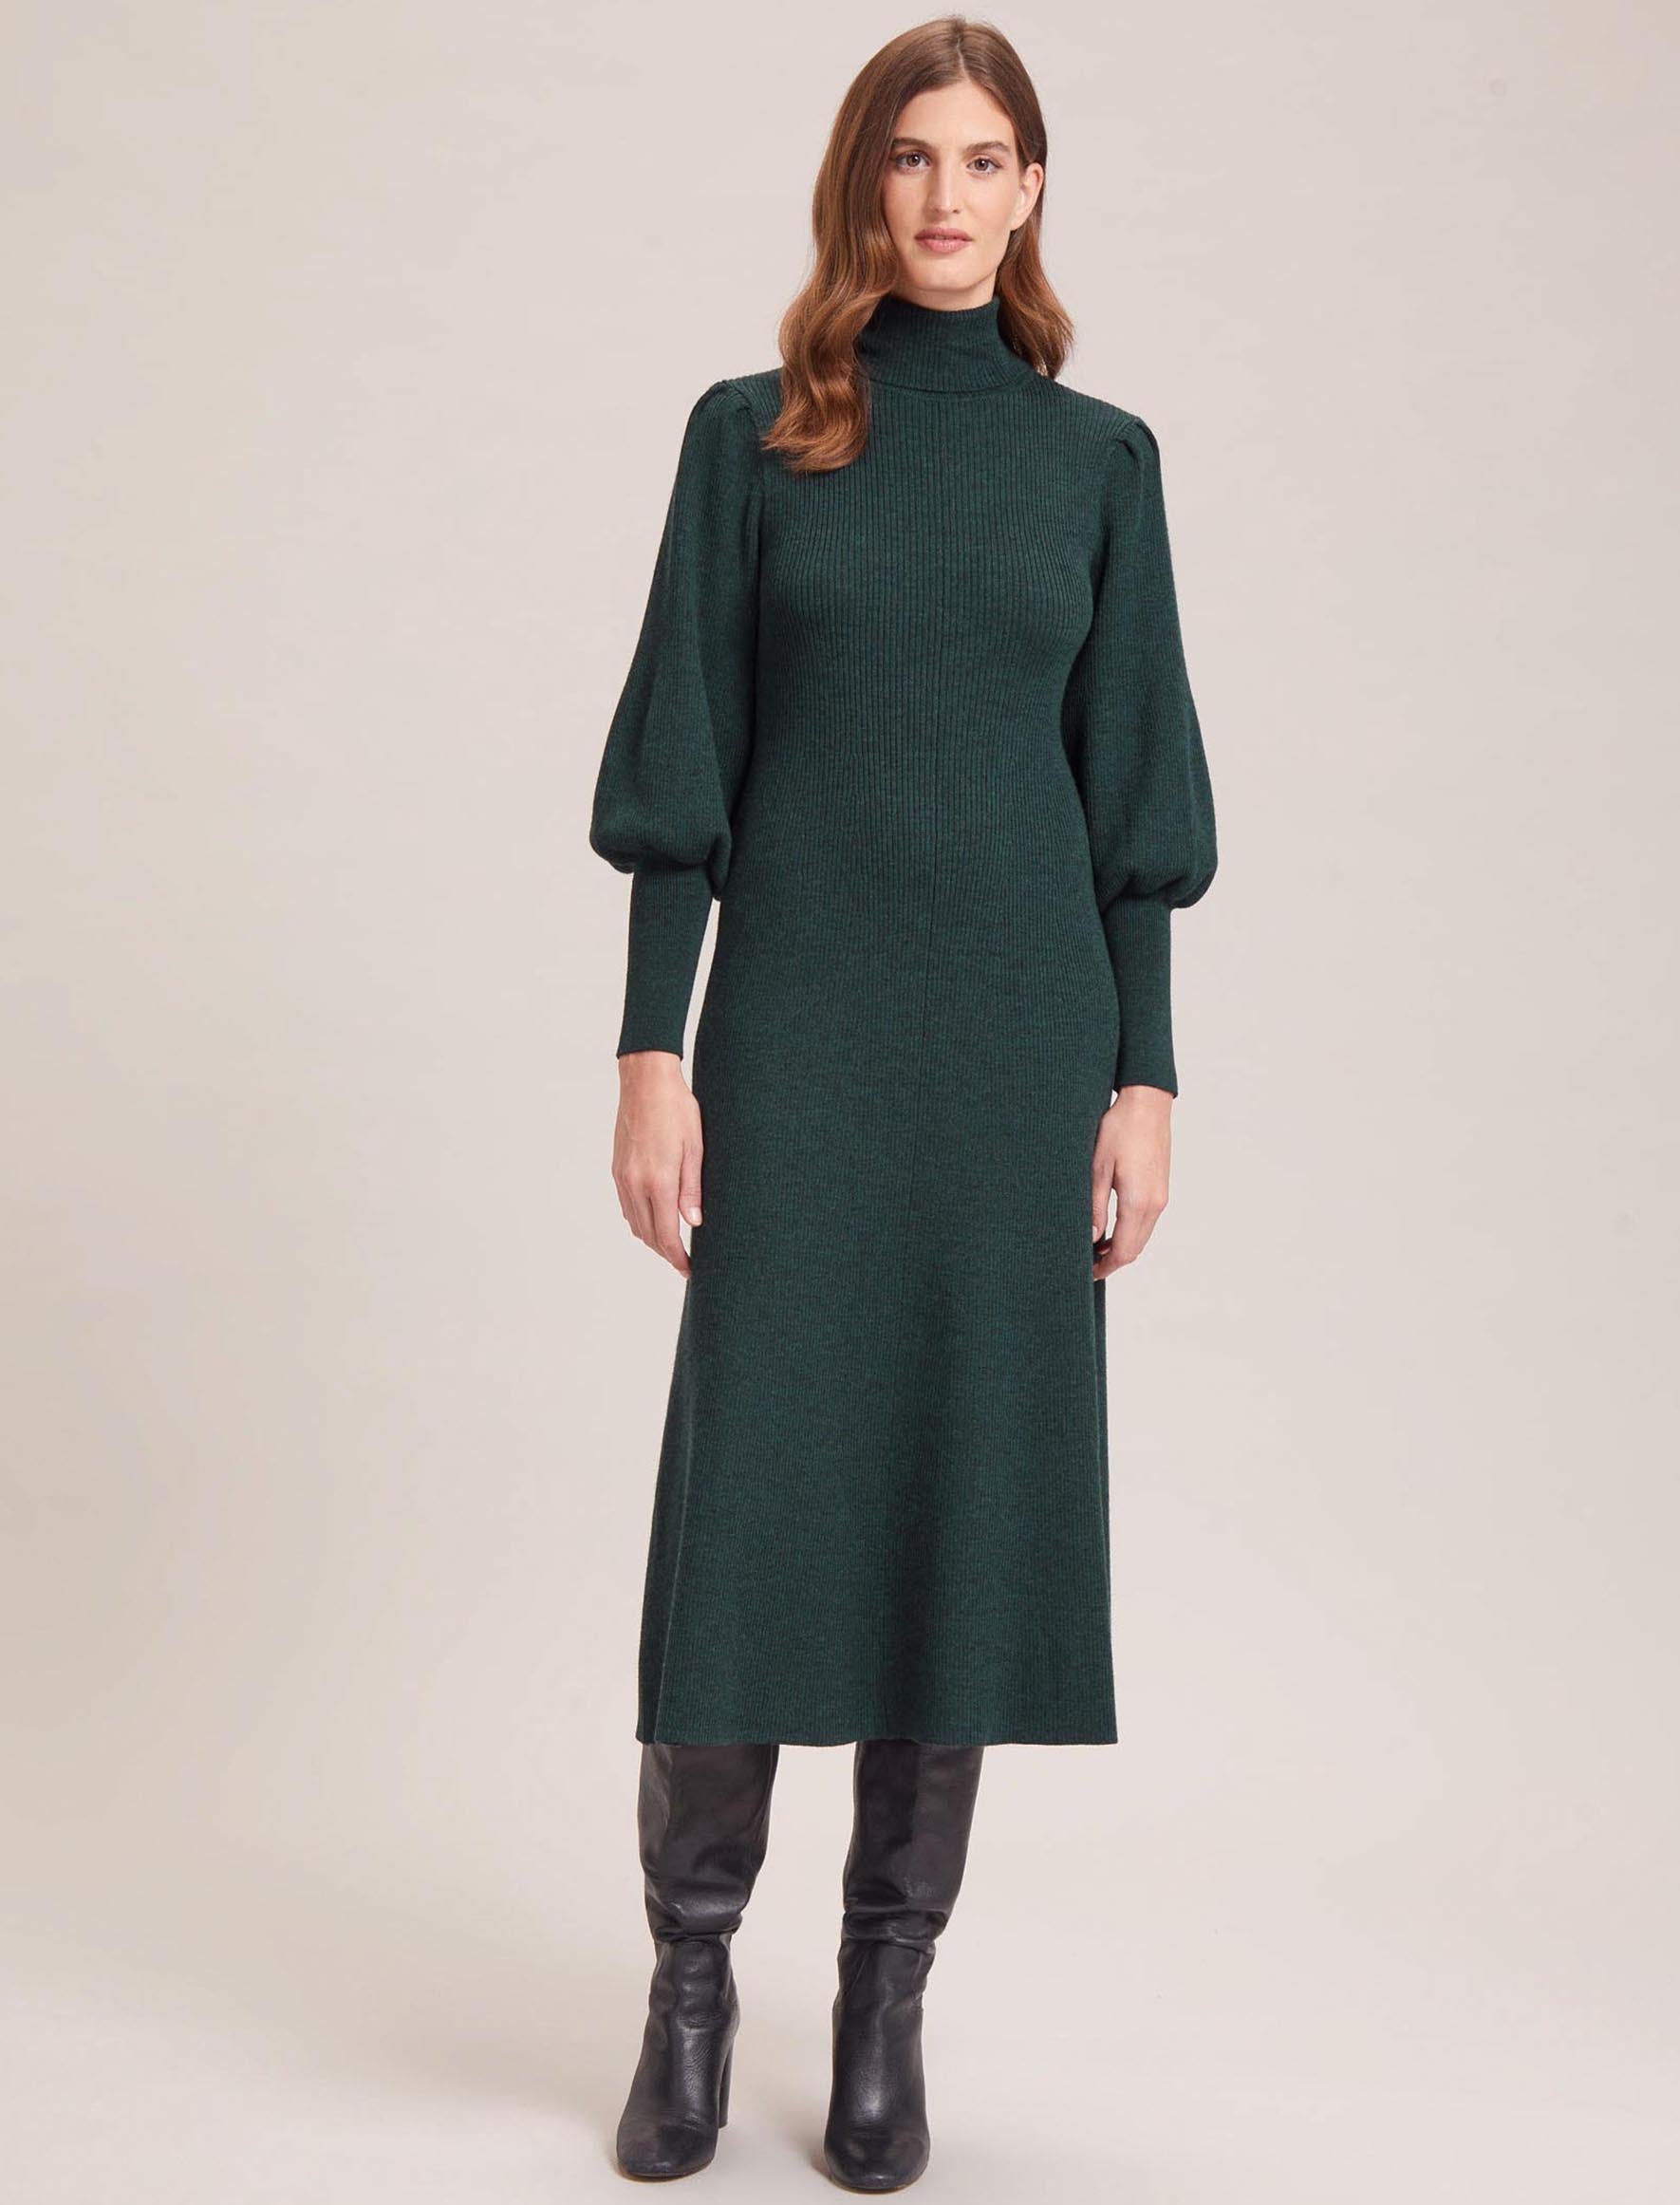 Cefinn Eva Merino Wool Roll Neck Dress - Dark Green